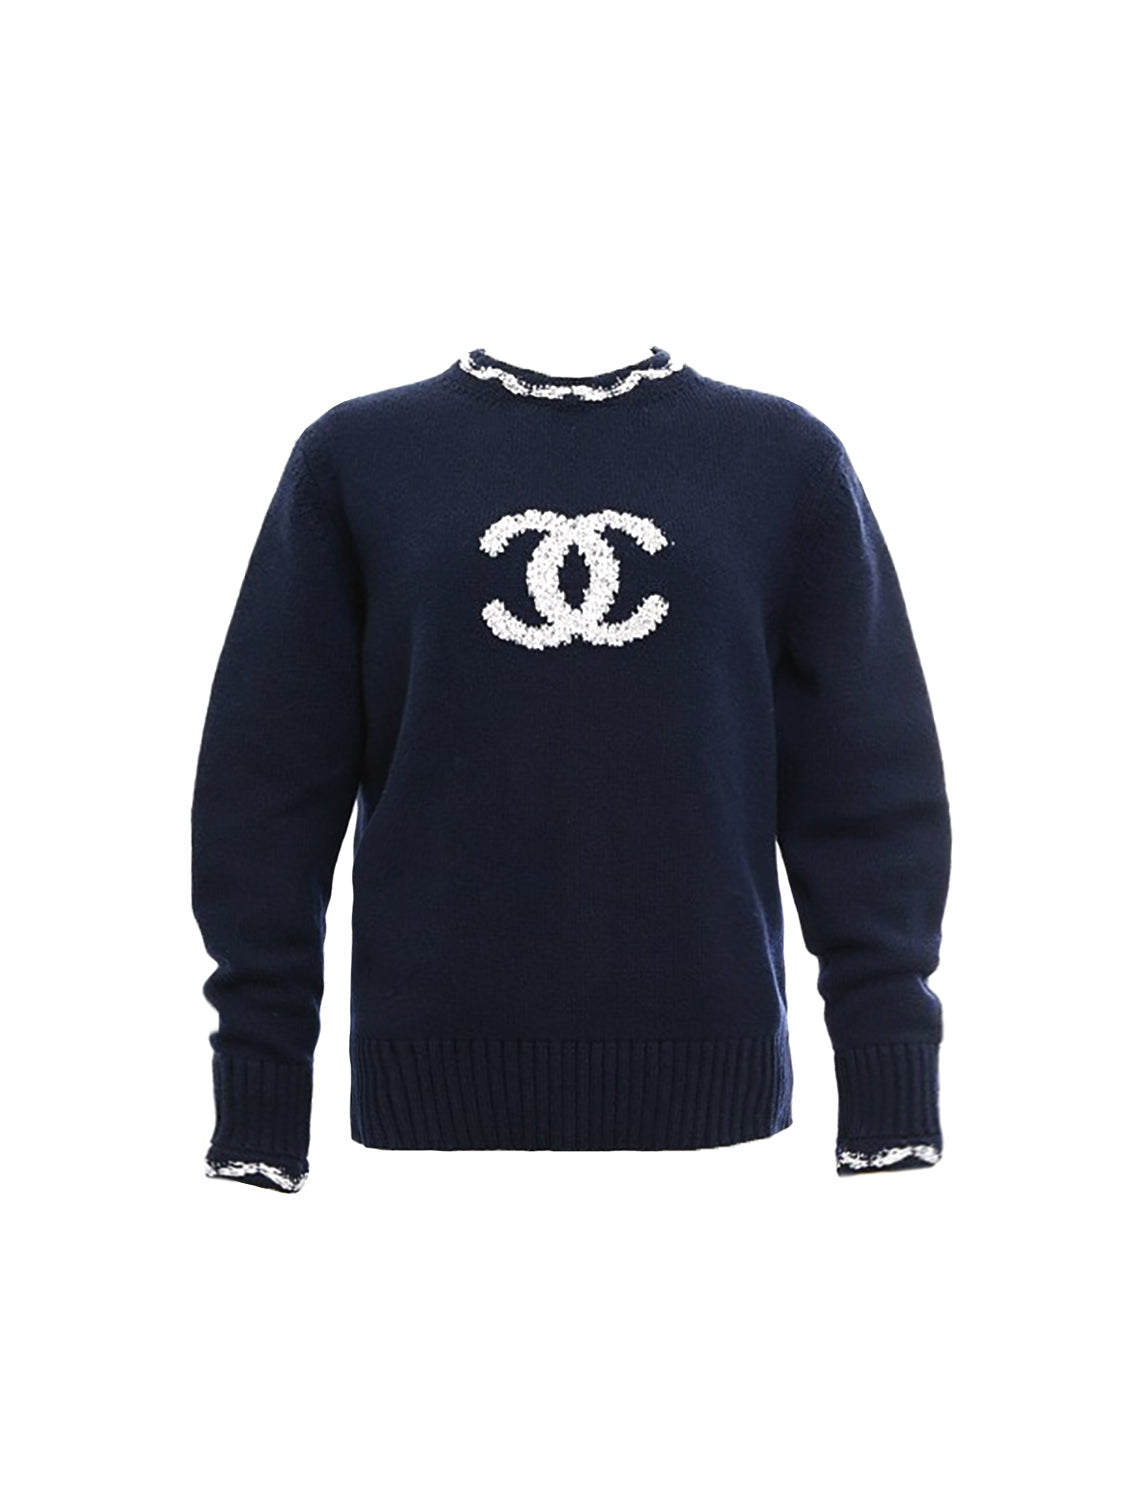 Chanel Beige Sweater